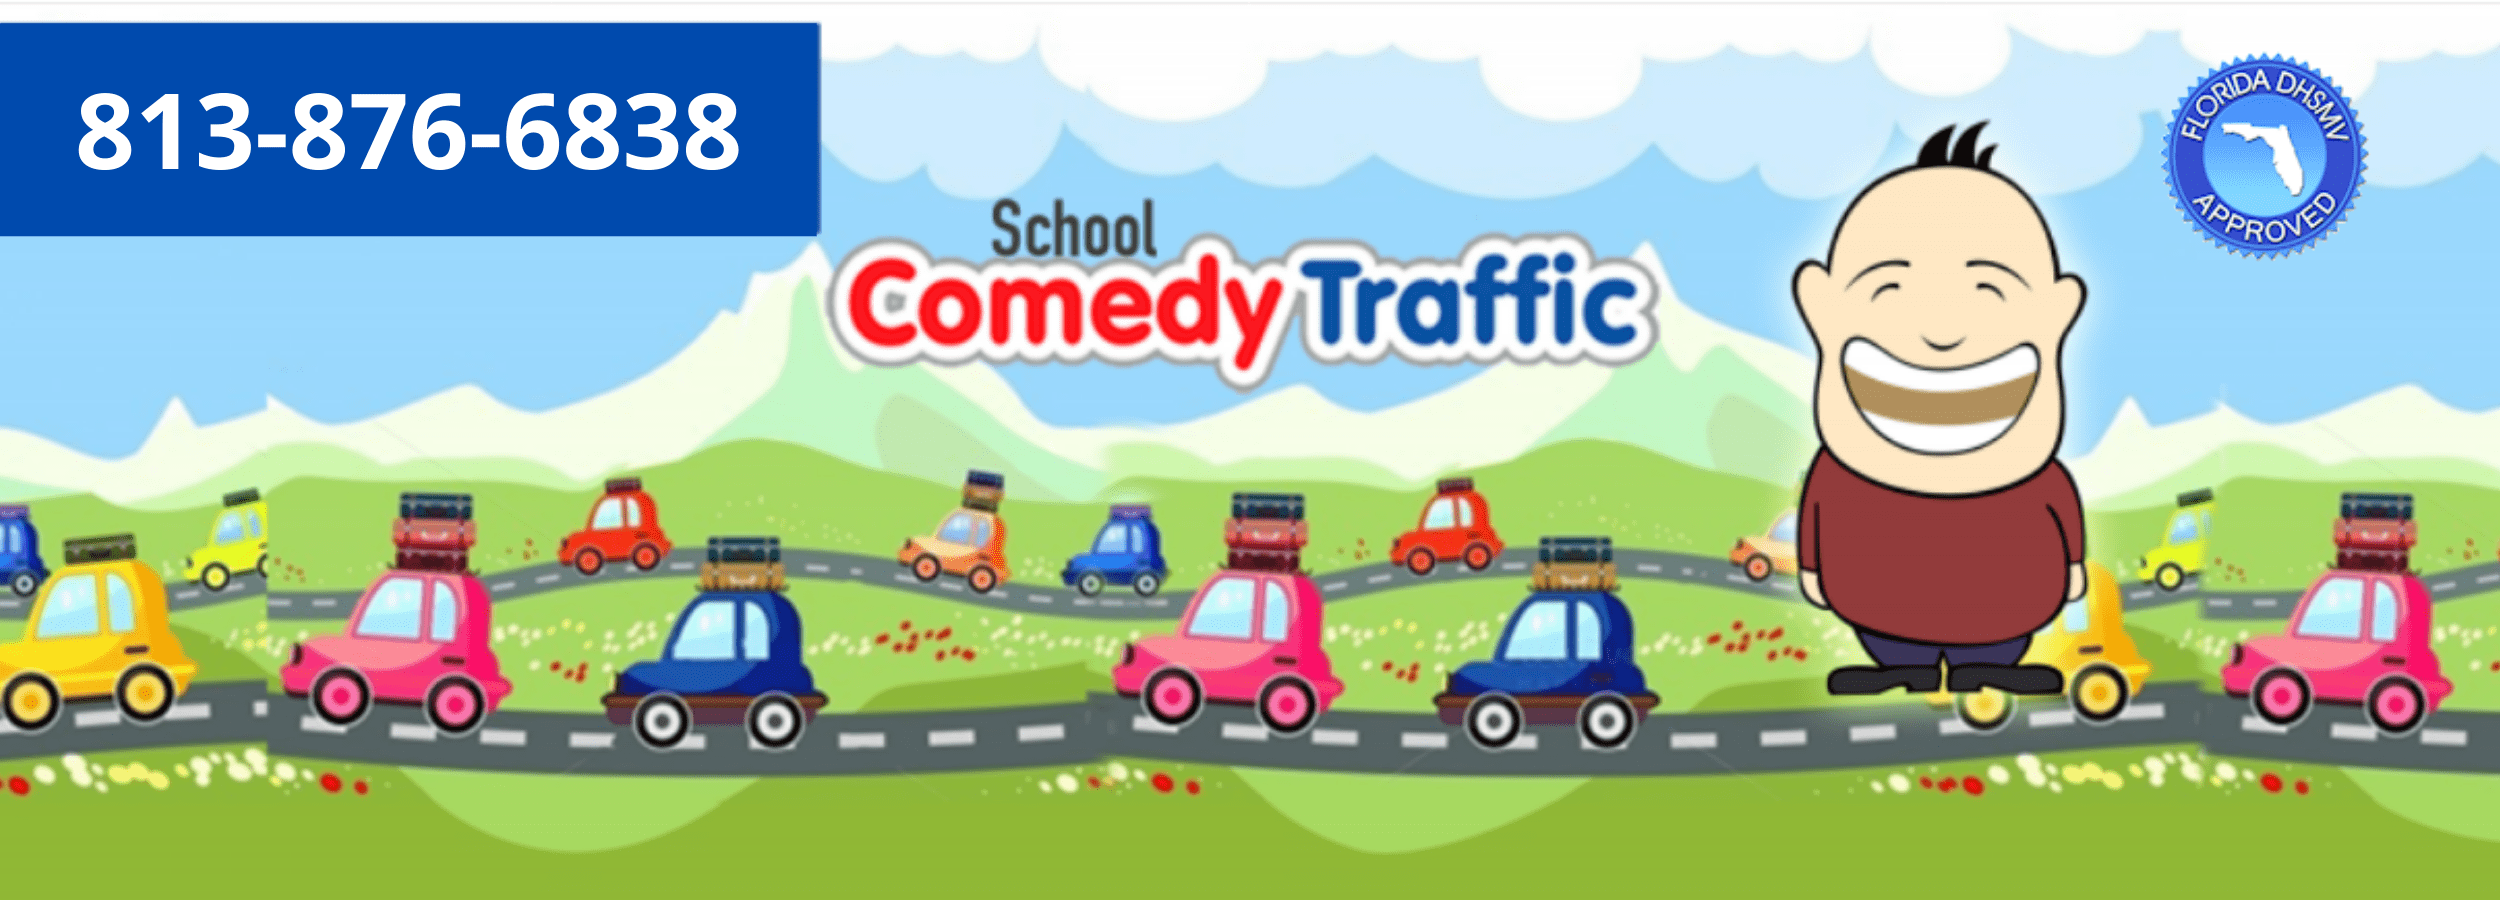 (c) Trafficschooltampafl.com